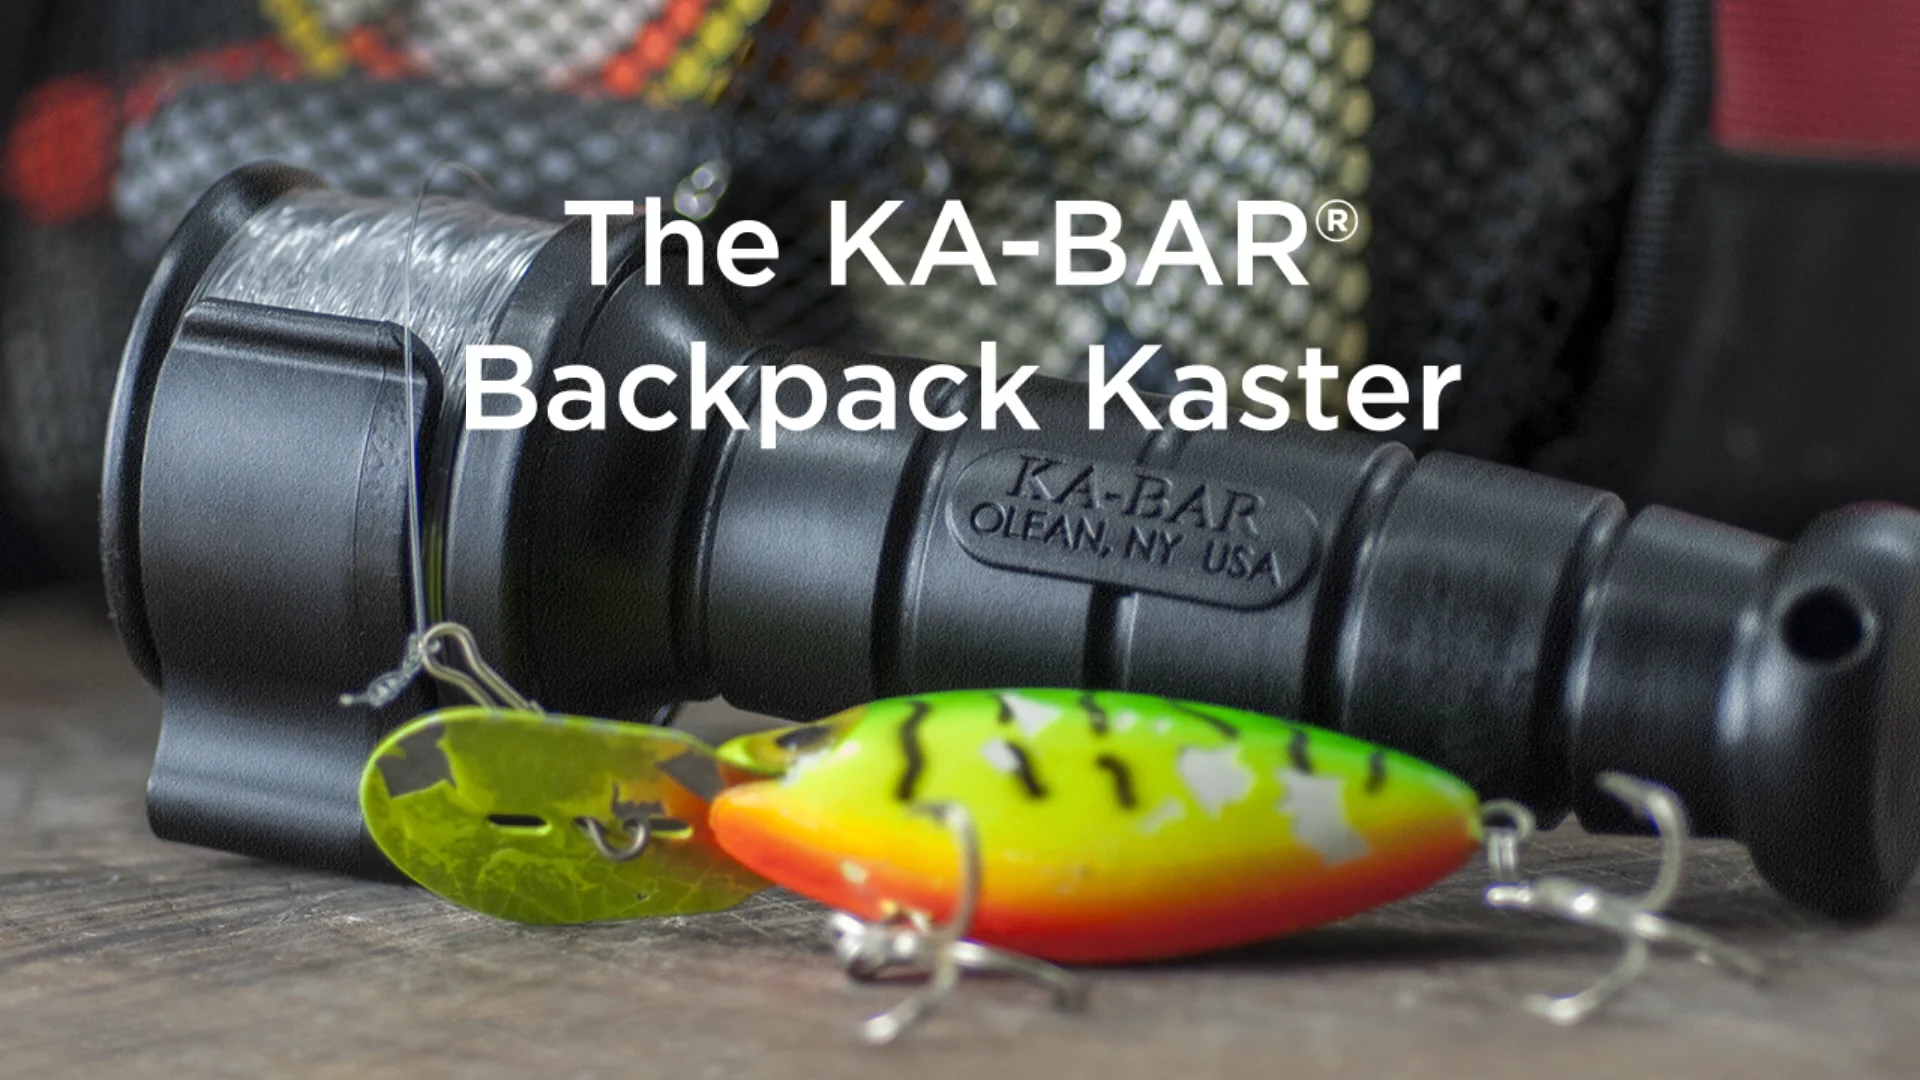 KA-BAR 9921 Backpack Kaster - Set Up and Cast on Vimeo